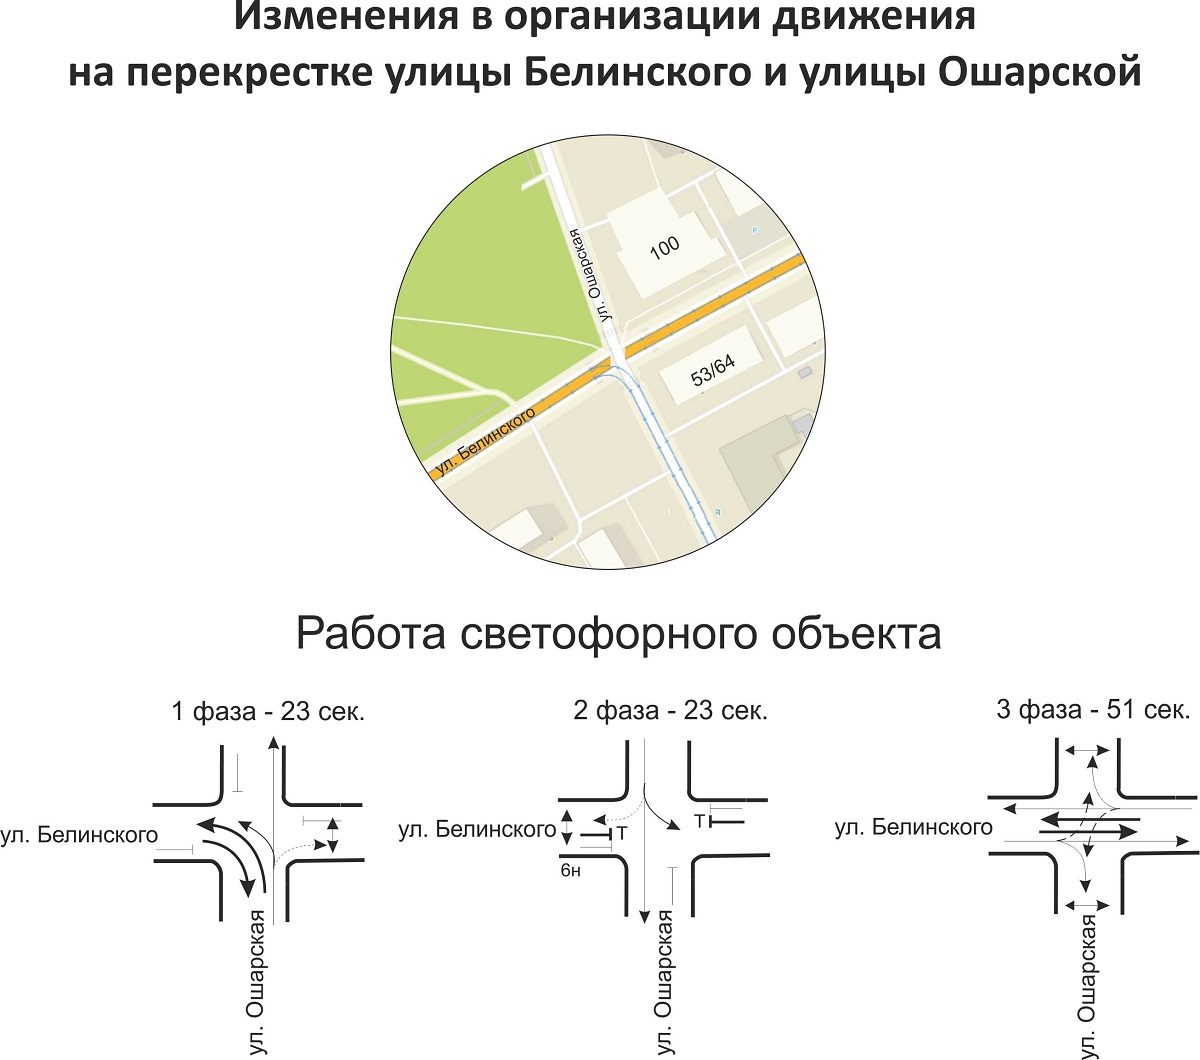 Новая схема работы светофоров на улице Белинского 